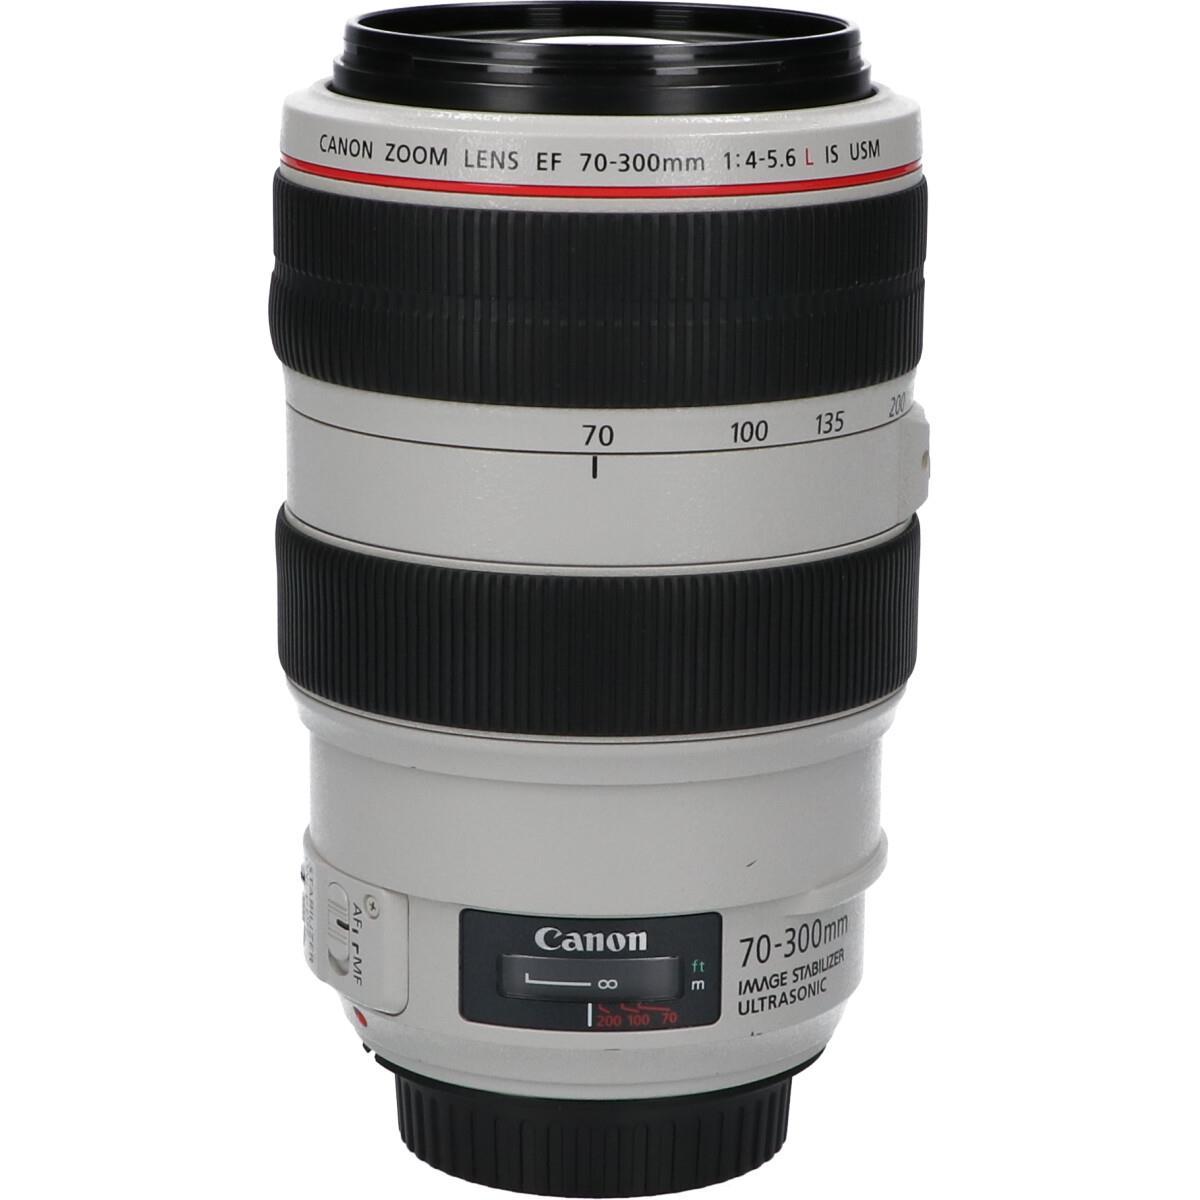 きれい Canon キャノン カメラレンズ EF 70-300mm f/4-5.6 IS USM Lens